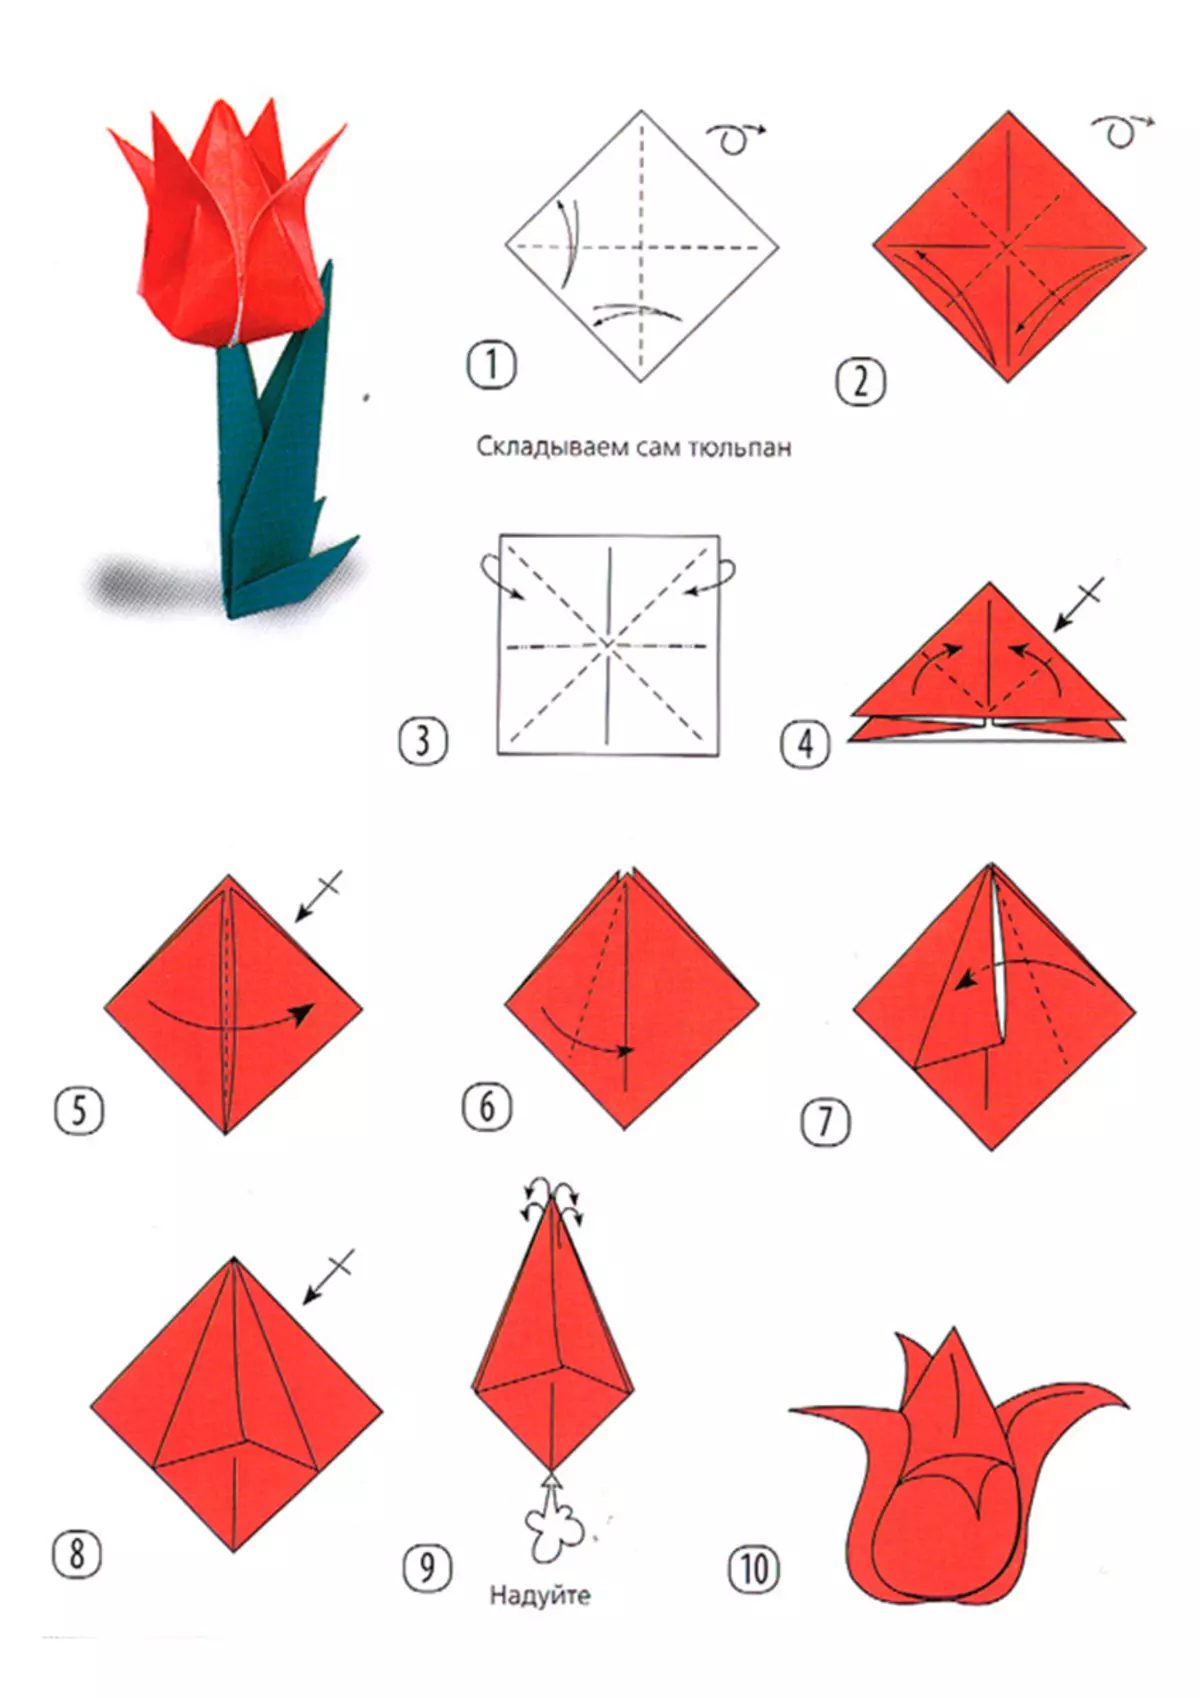 Цветок крокус оригами пошагово. Цветы из бумаги оригами простые схемы пошагово. Оригами тюльпан пошагово для начинающих. Оригами тюльпан схема. Оригами цветок тюльпан схема.